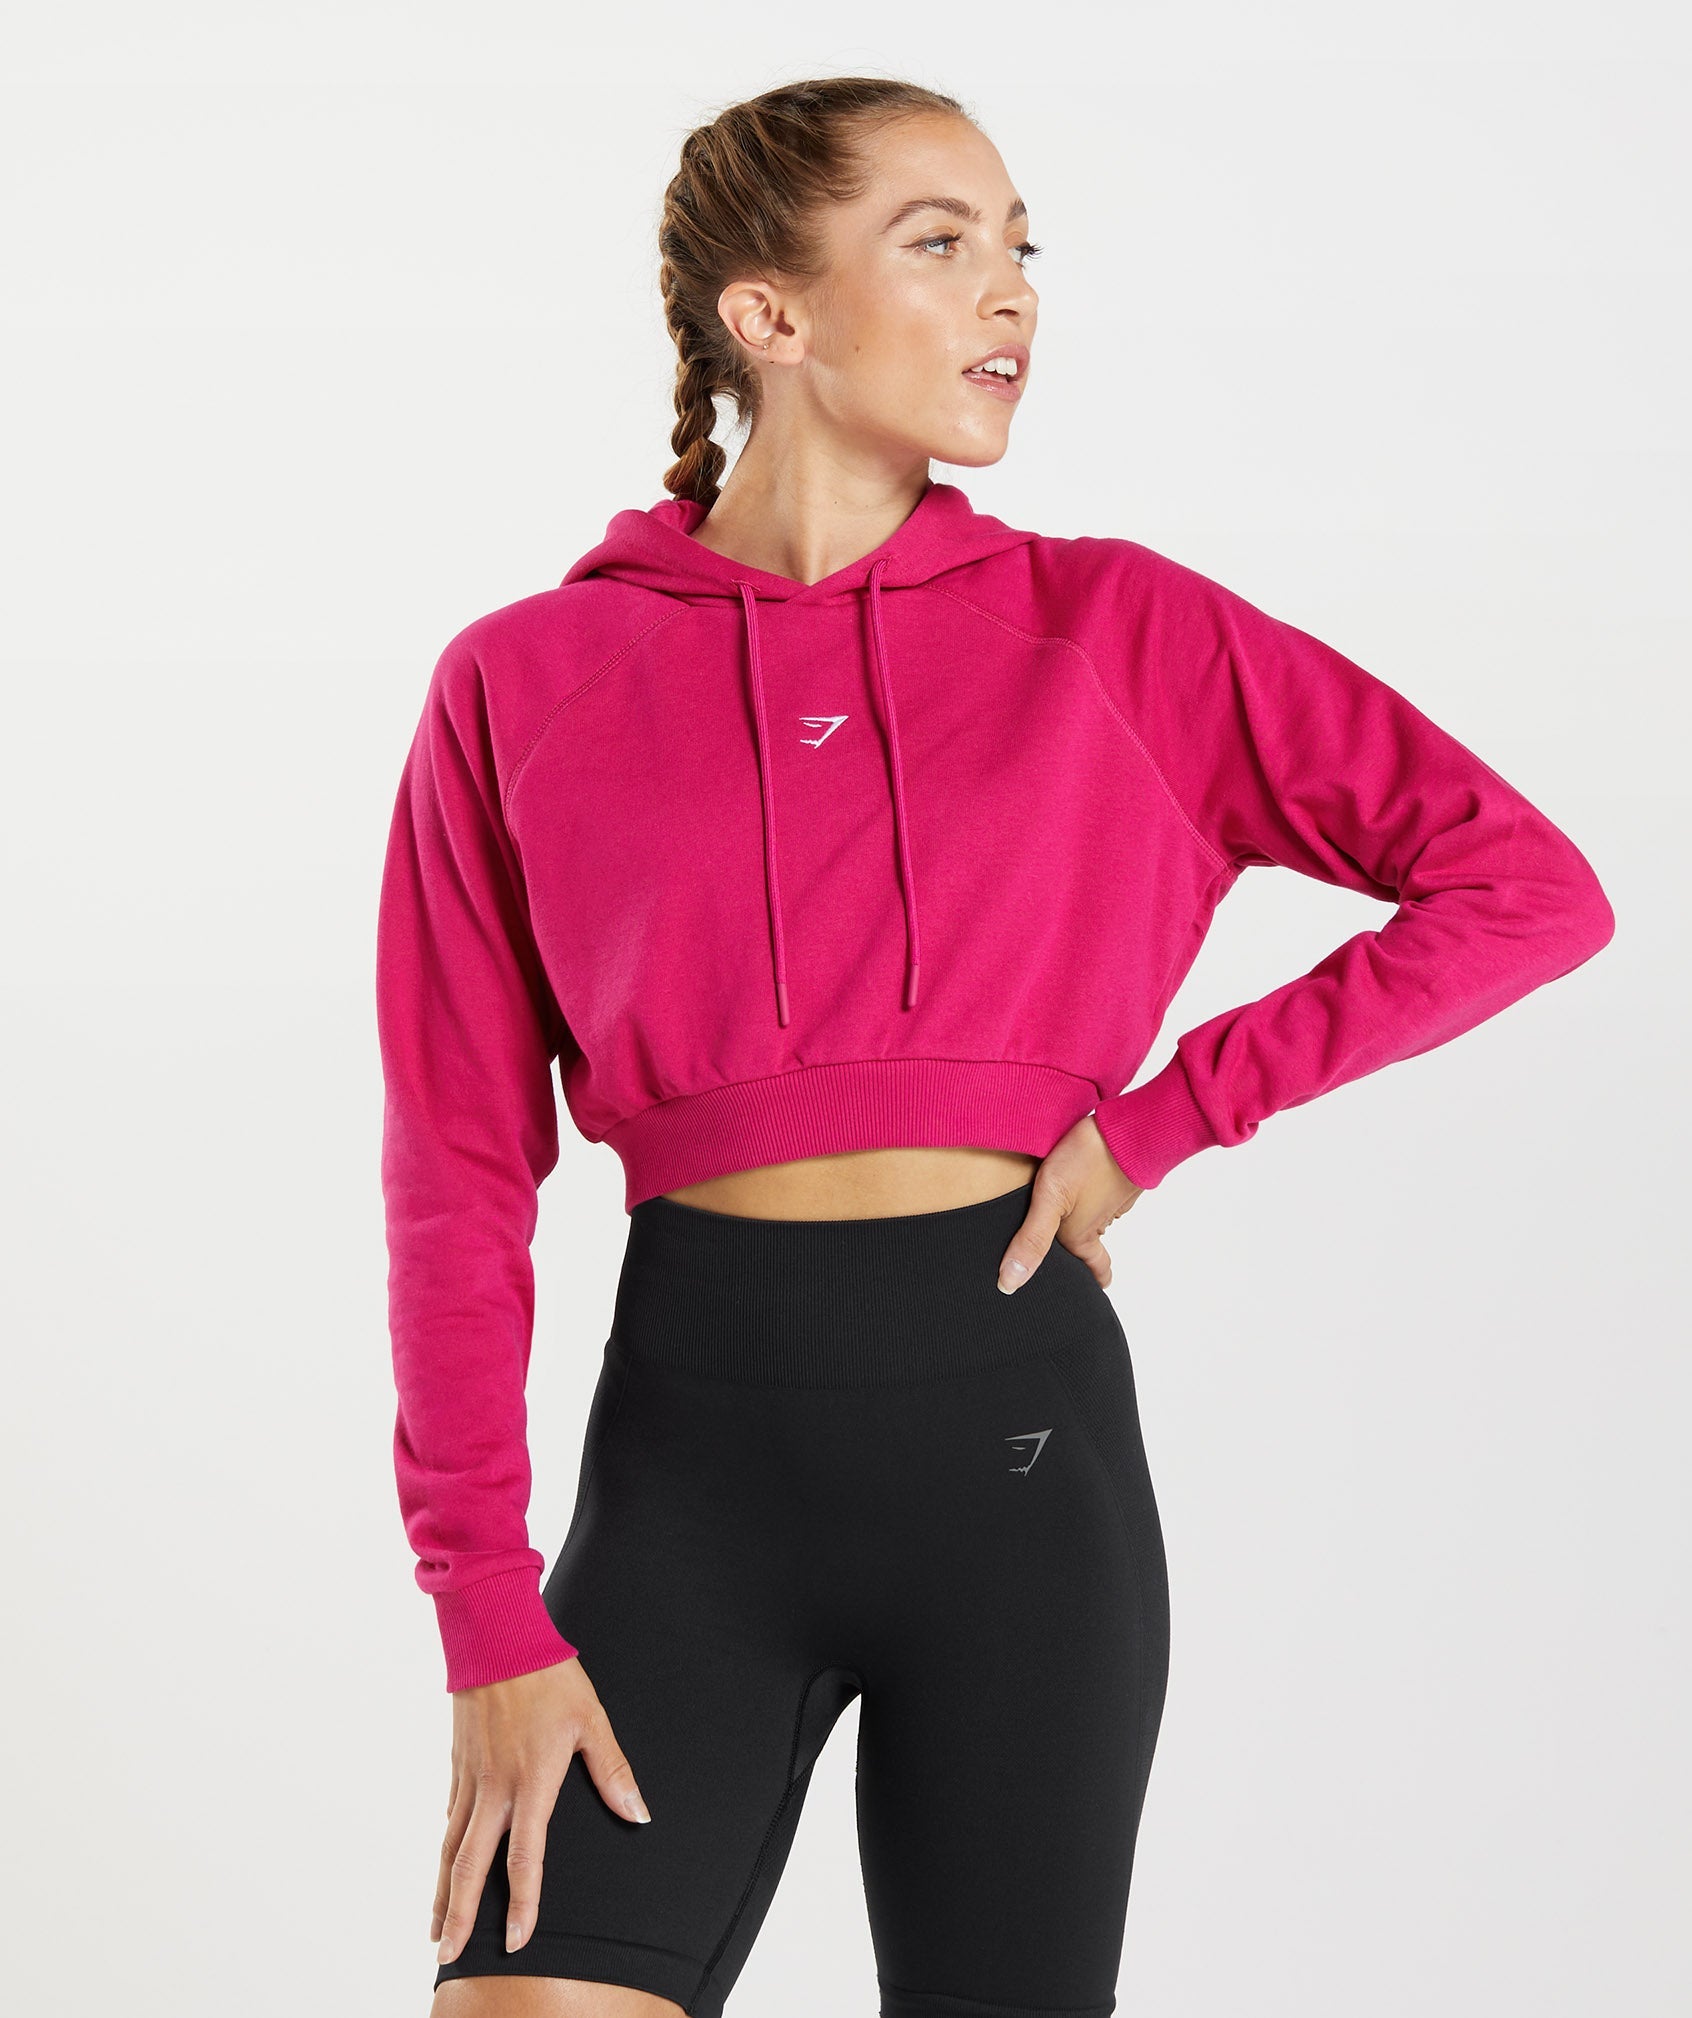 GymShark Hoodie Womens Medium Full Zip Up Cropped Activewear Athletic Pink  NWOT